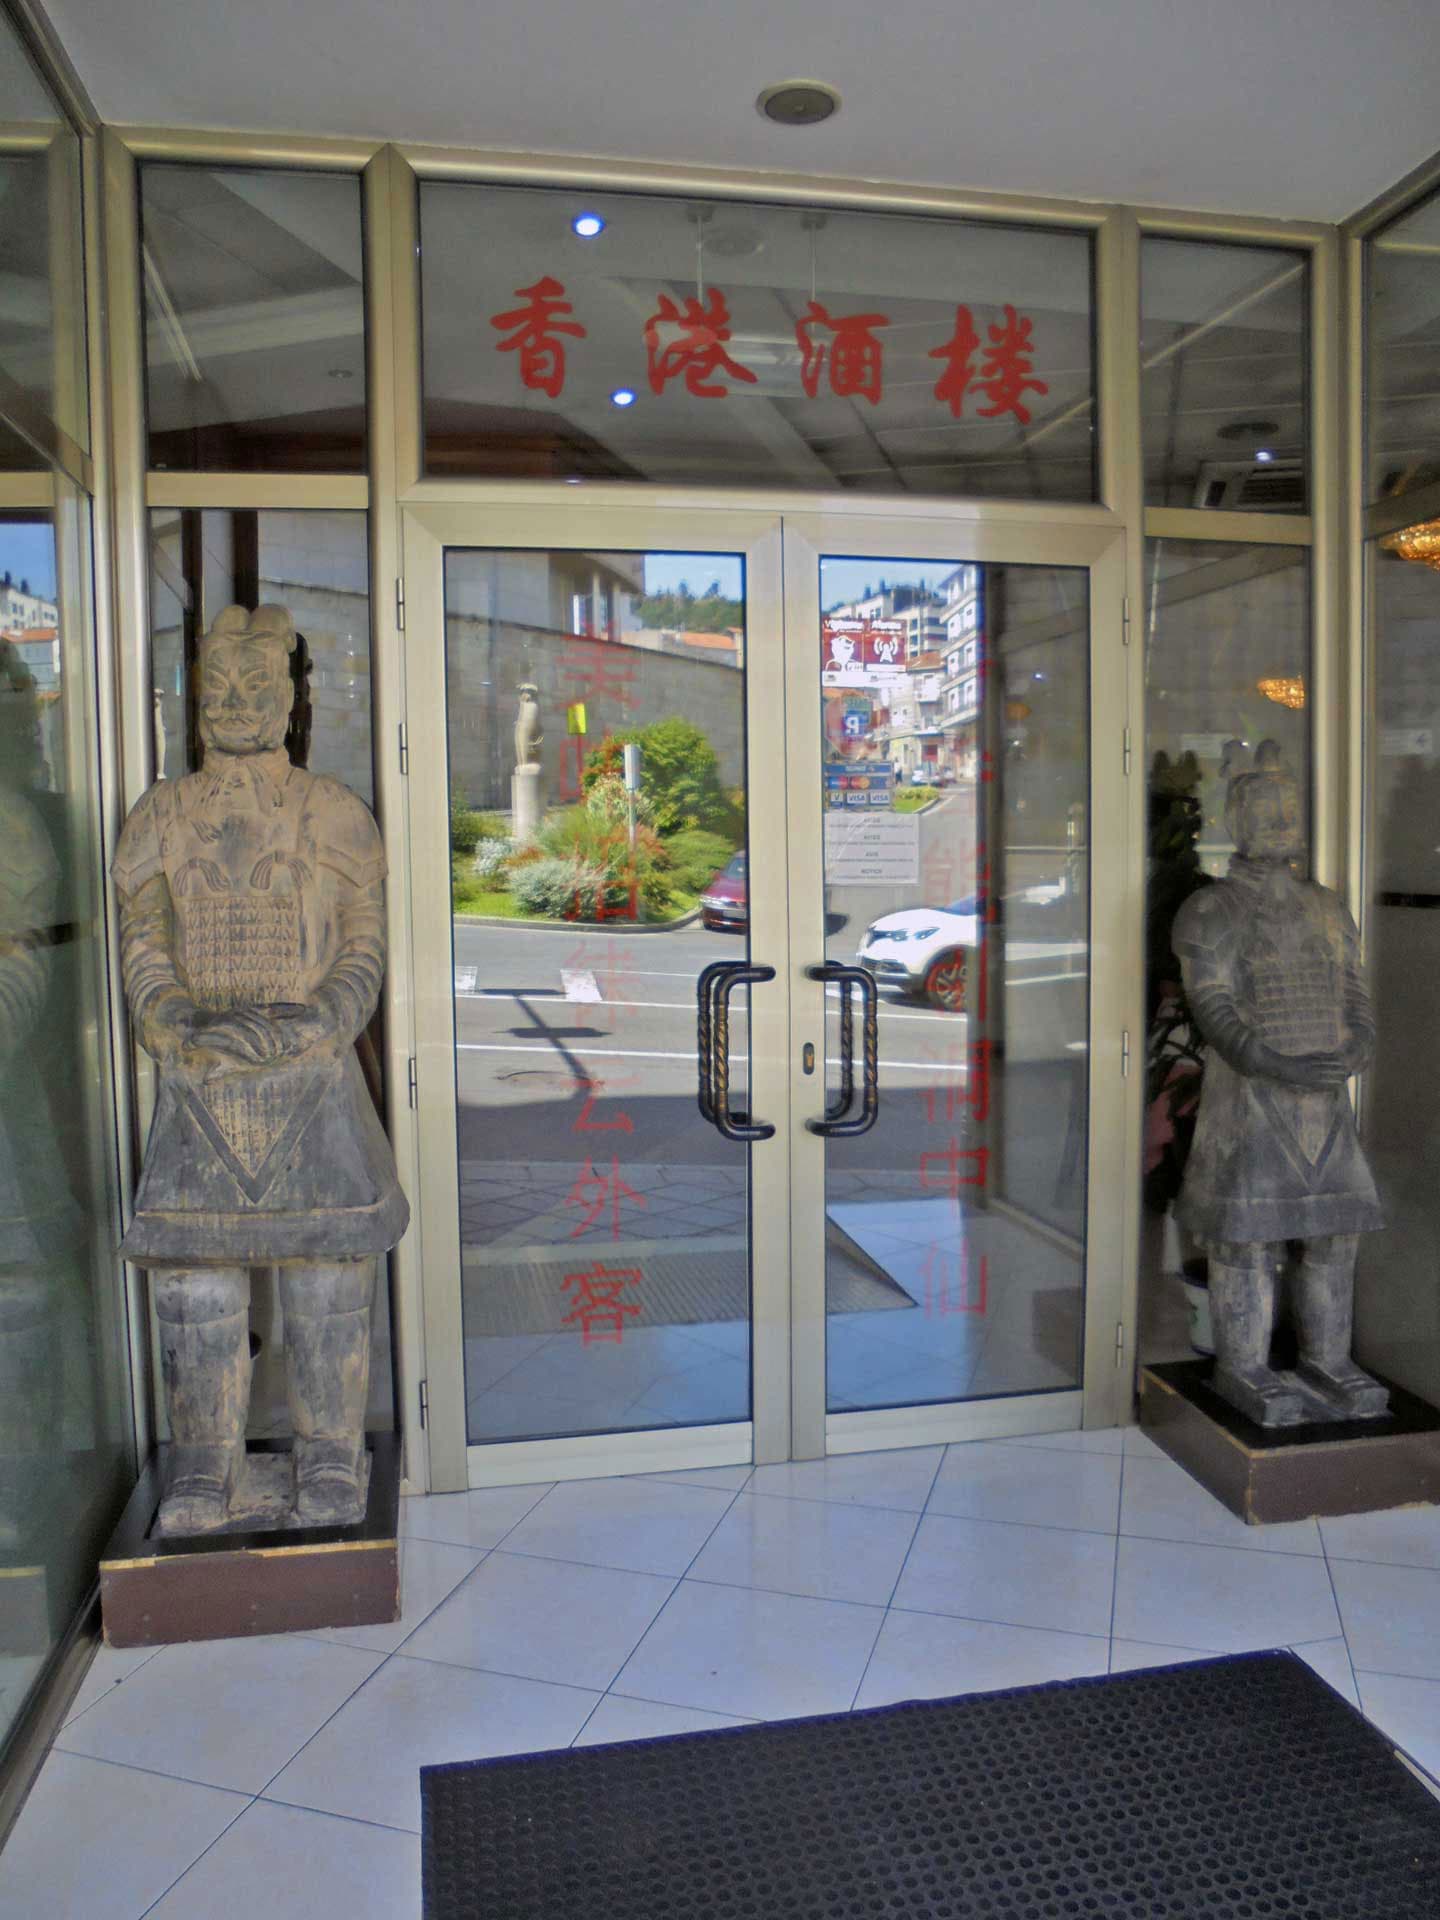 Instalaciones del restaurante chino Hong Kong